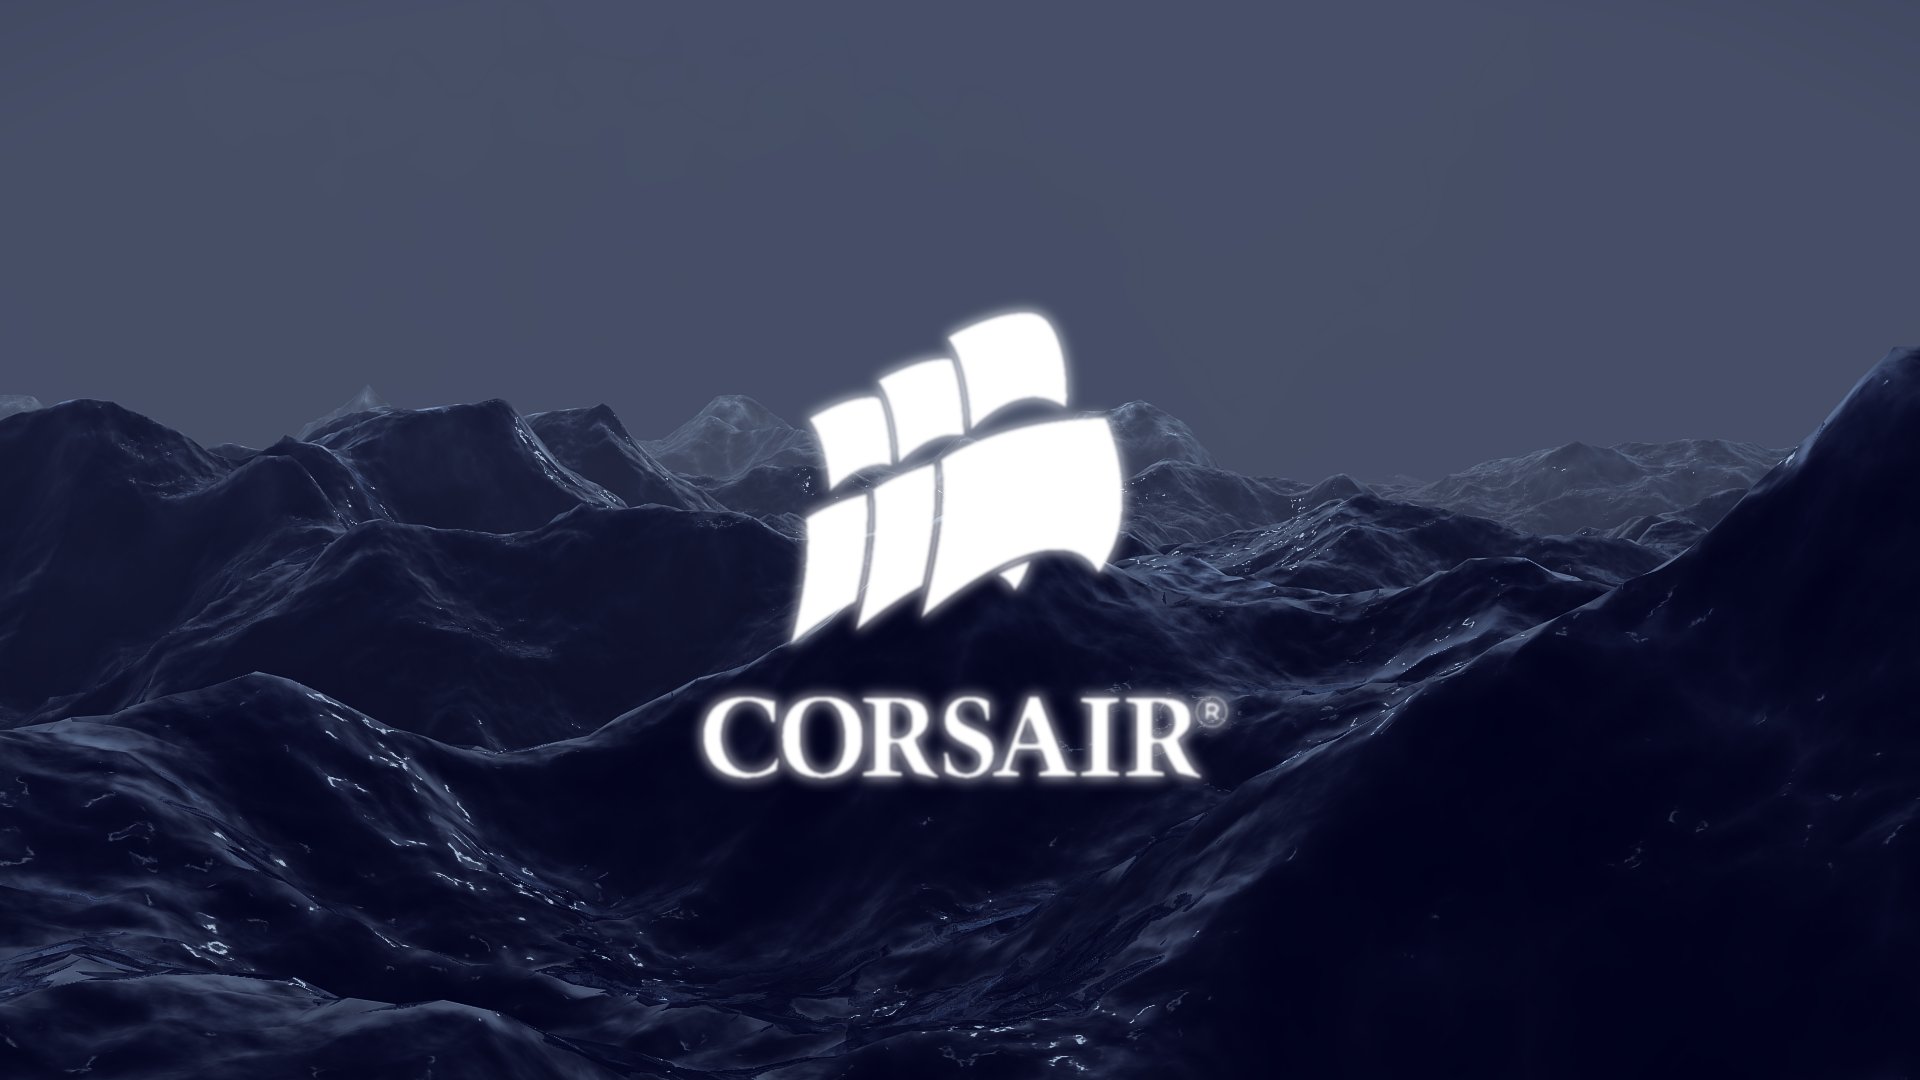 Corsair Gaming Wallpaper